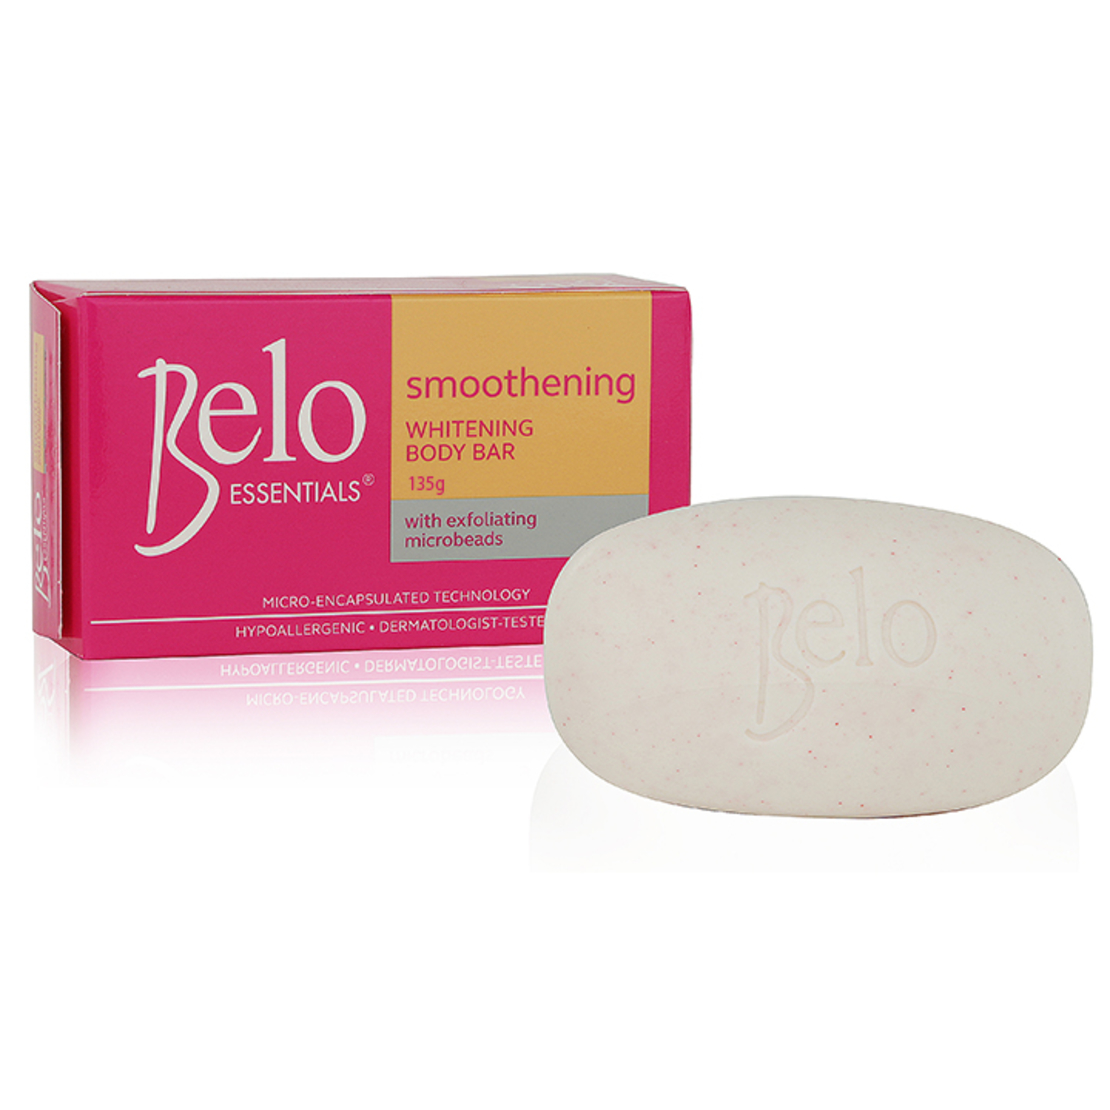 Belo Essentials - Smoothening Whitening Body Bar